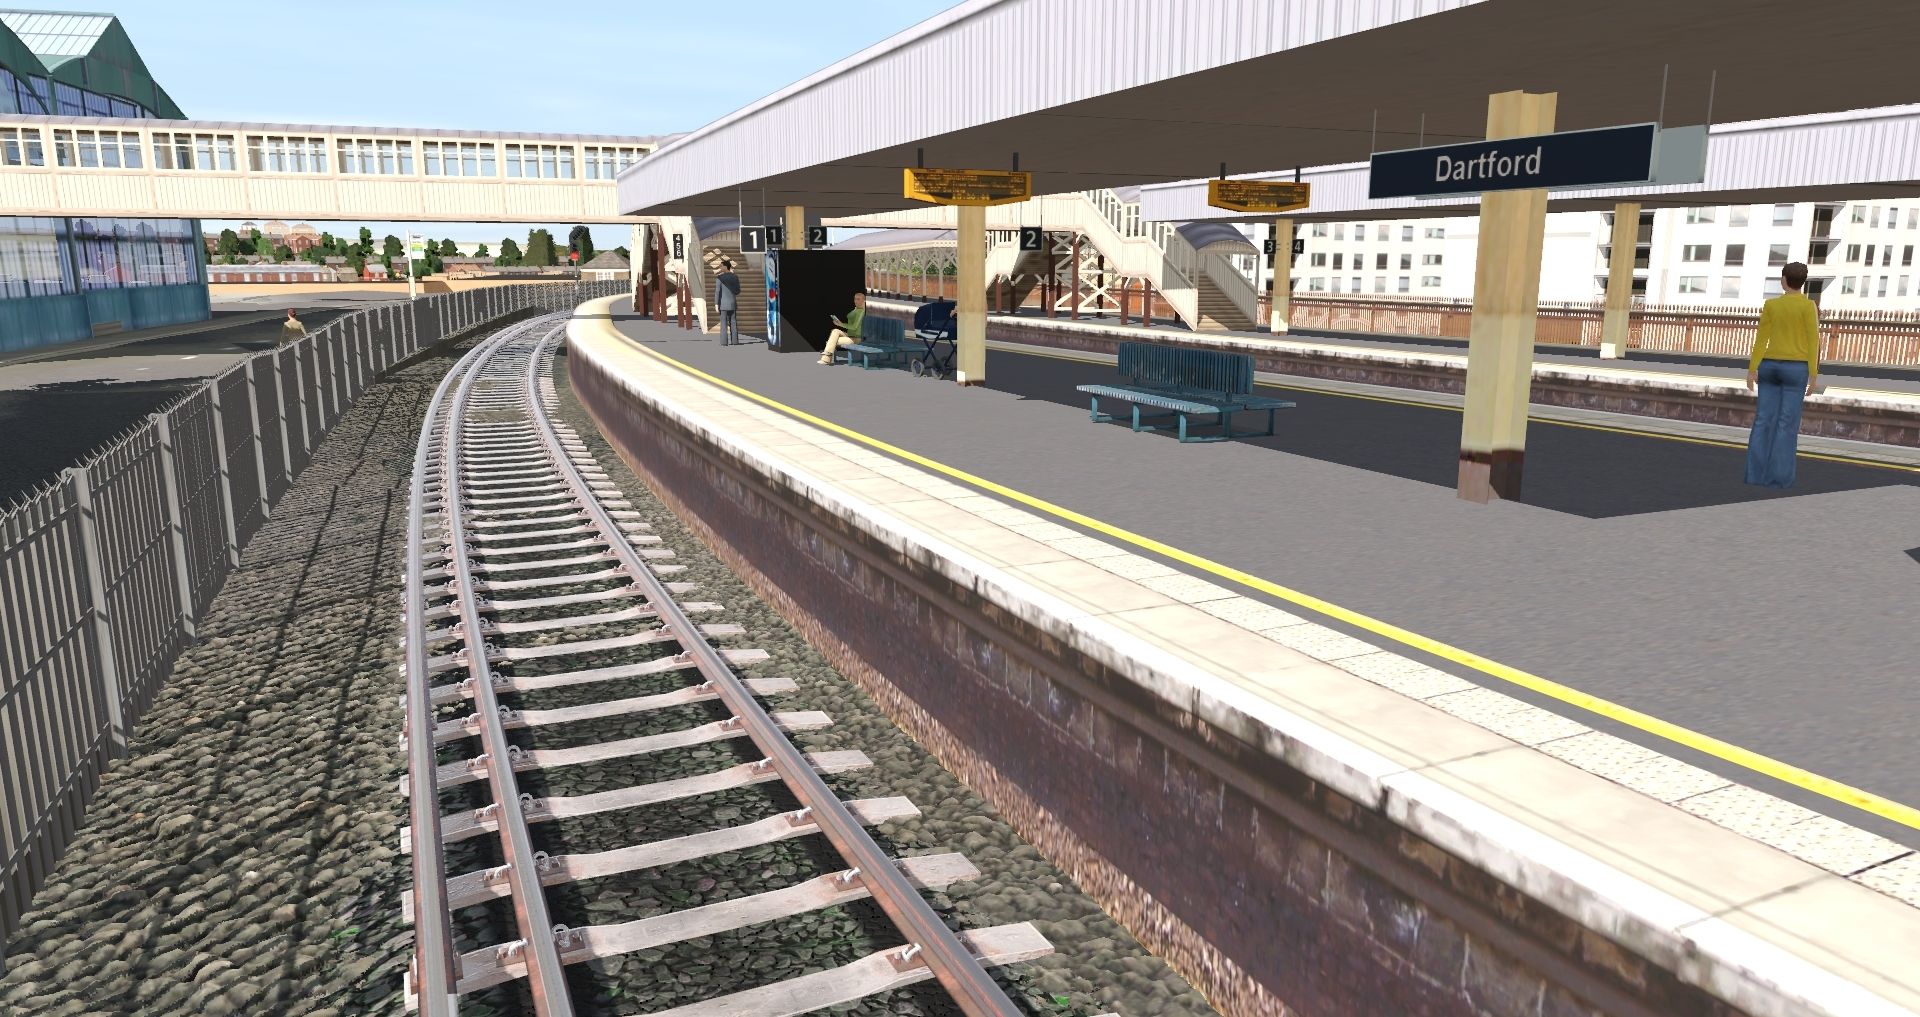 Dartford-Station-from-platform-1.jpg